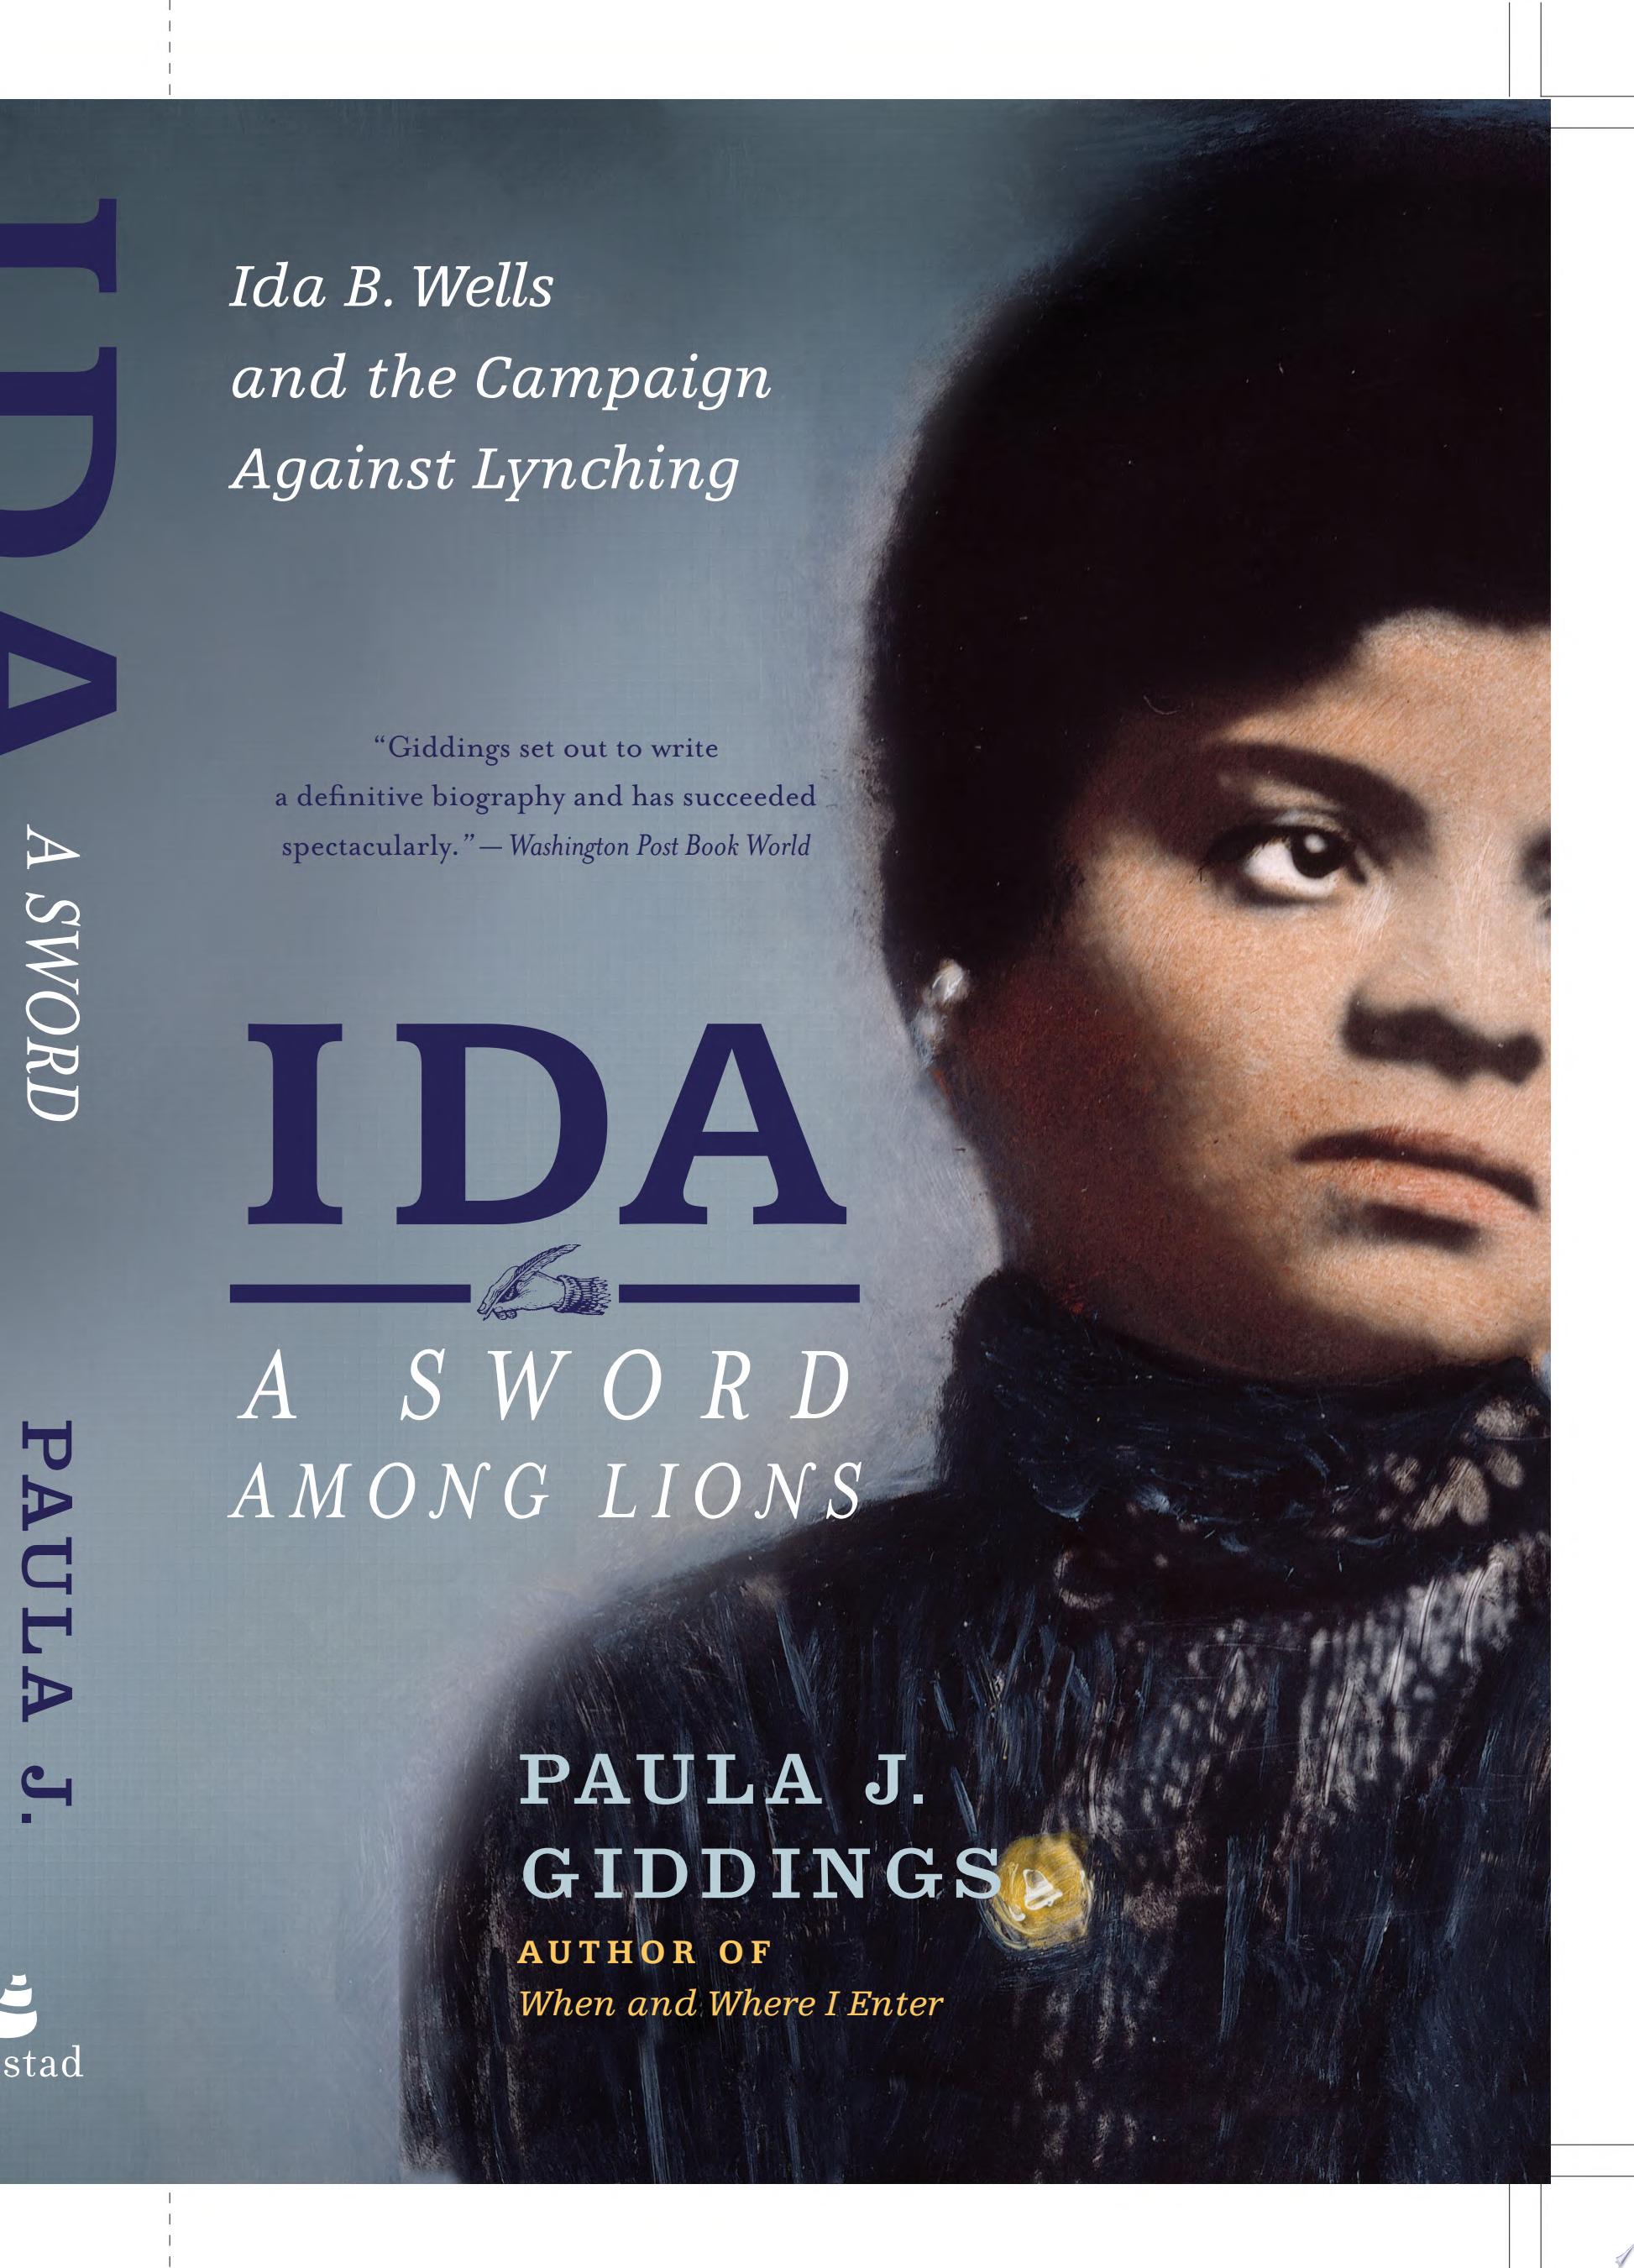 Image for "Ida: A Sword Among Lions"